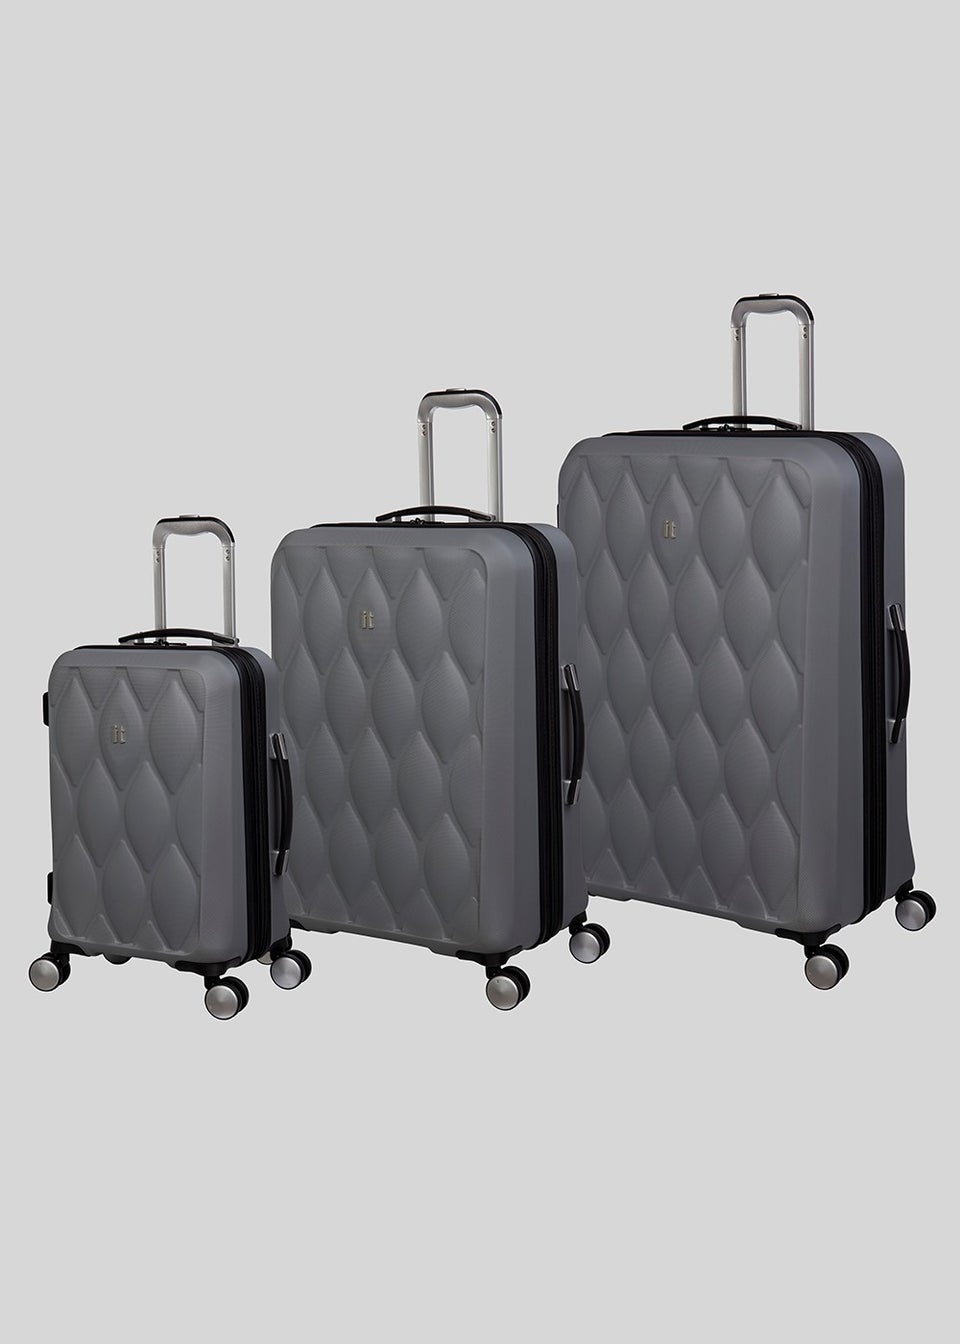 Designer Inspired Large capacity travel luggage - Grey